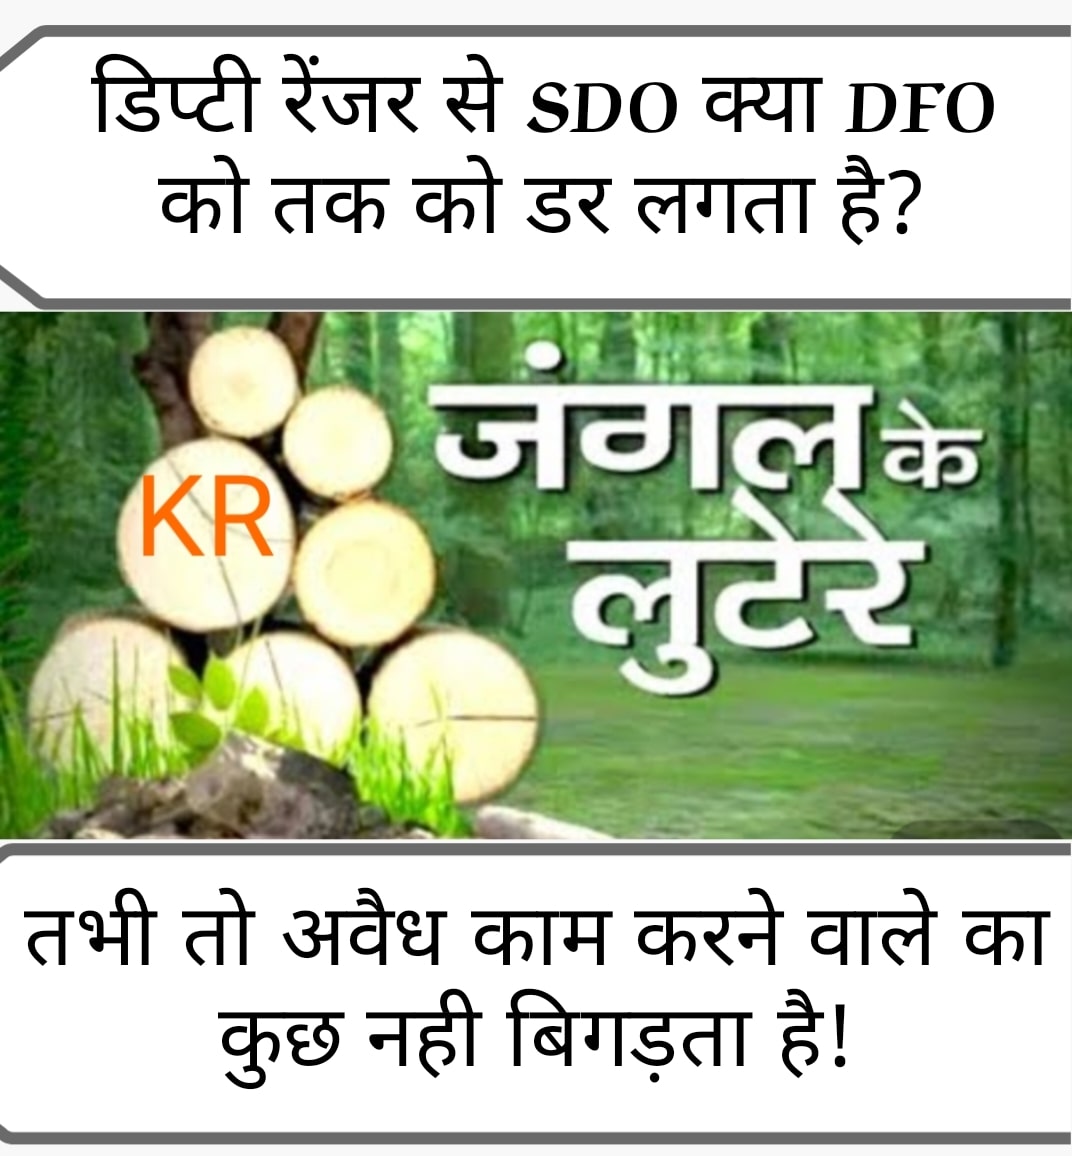 #मामला वन विभाग में फर्जी टीपी जारी करने वाले को बचाने का... DFO हो या SDO, सब में खौफ है रघु राज का...!